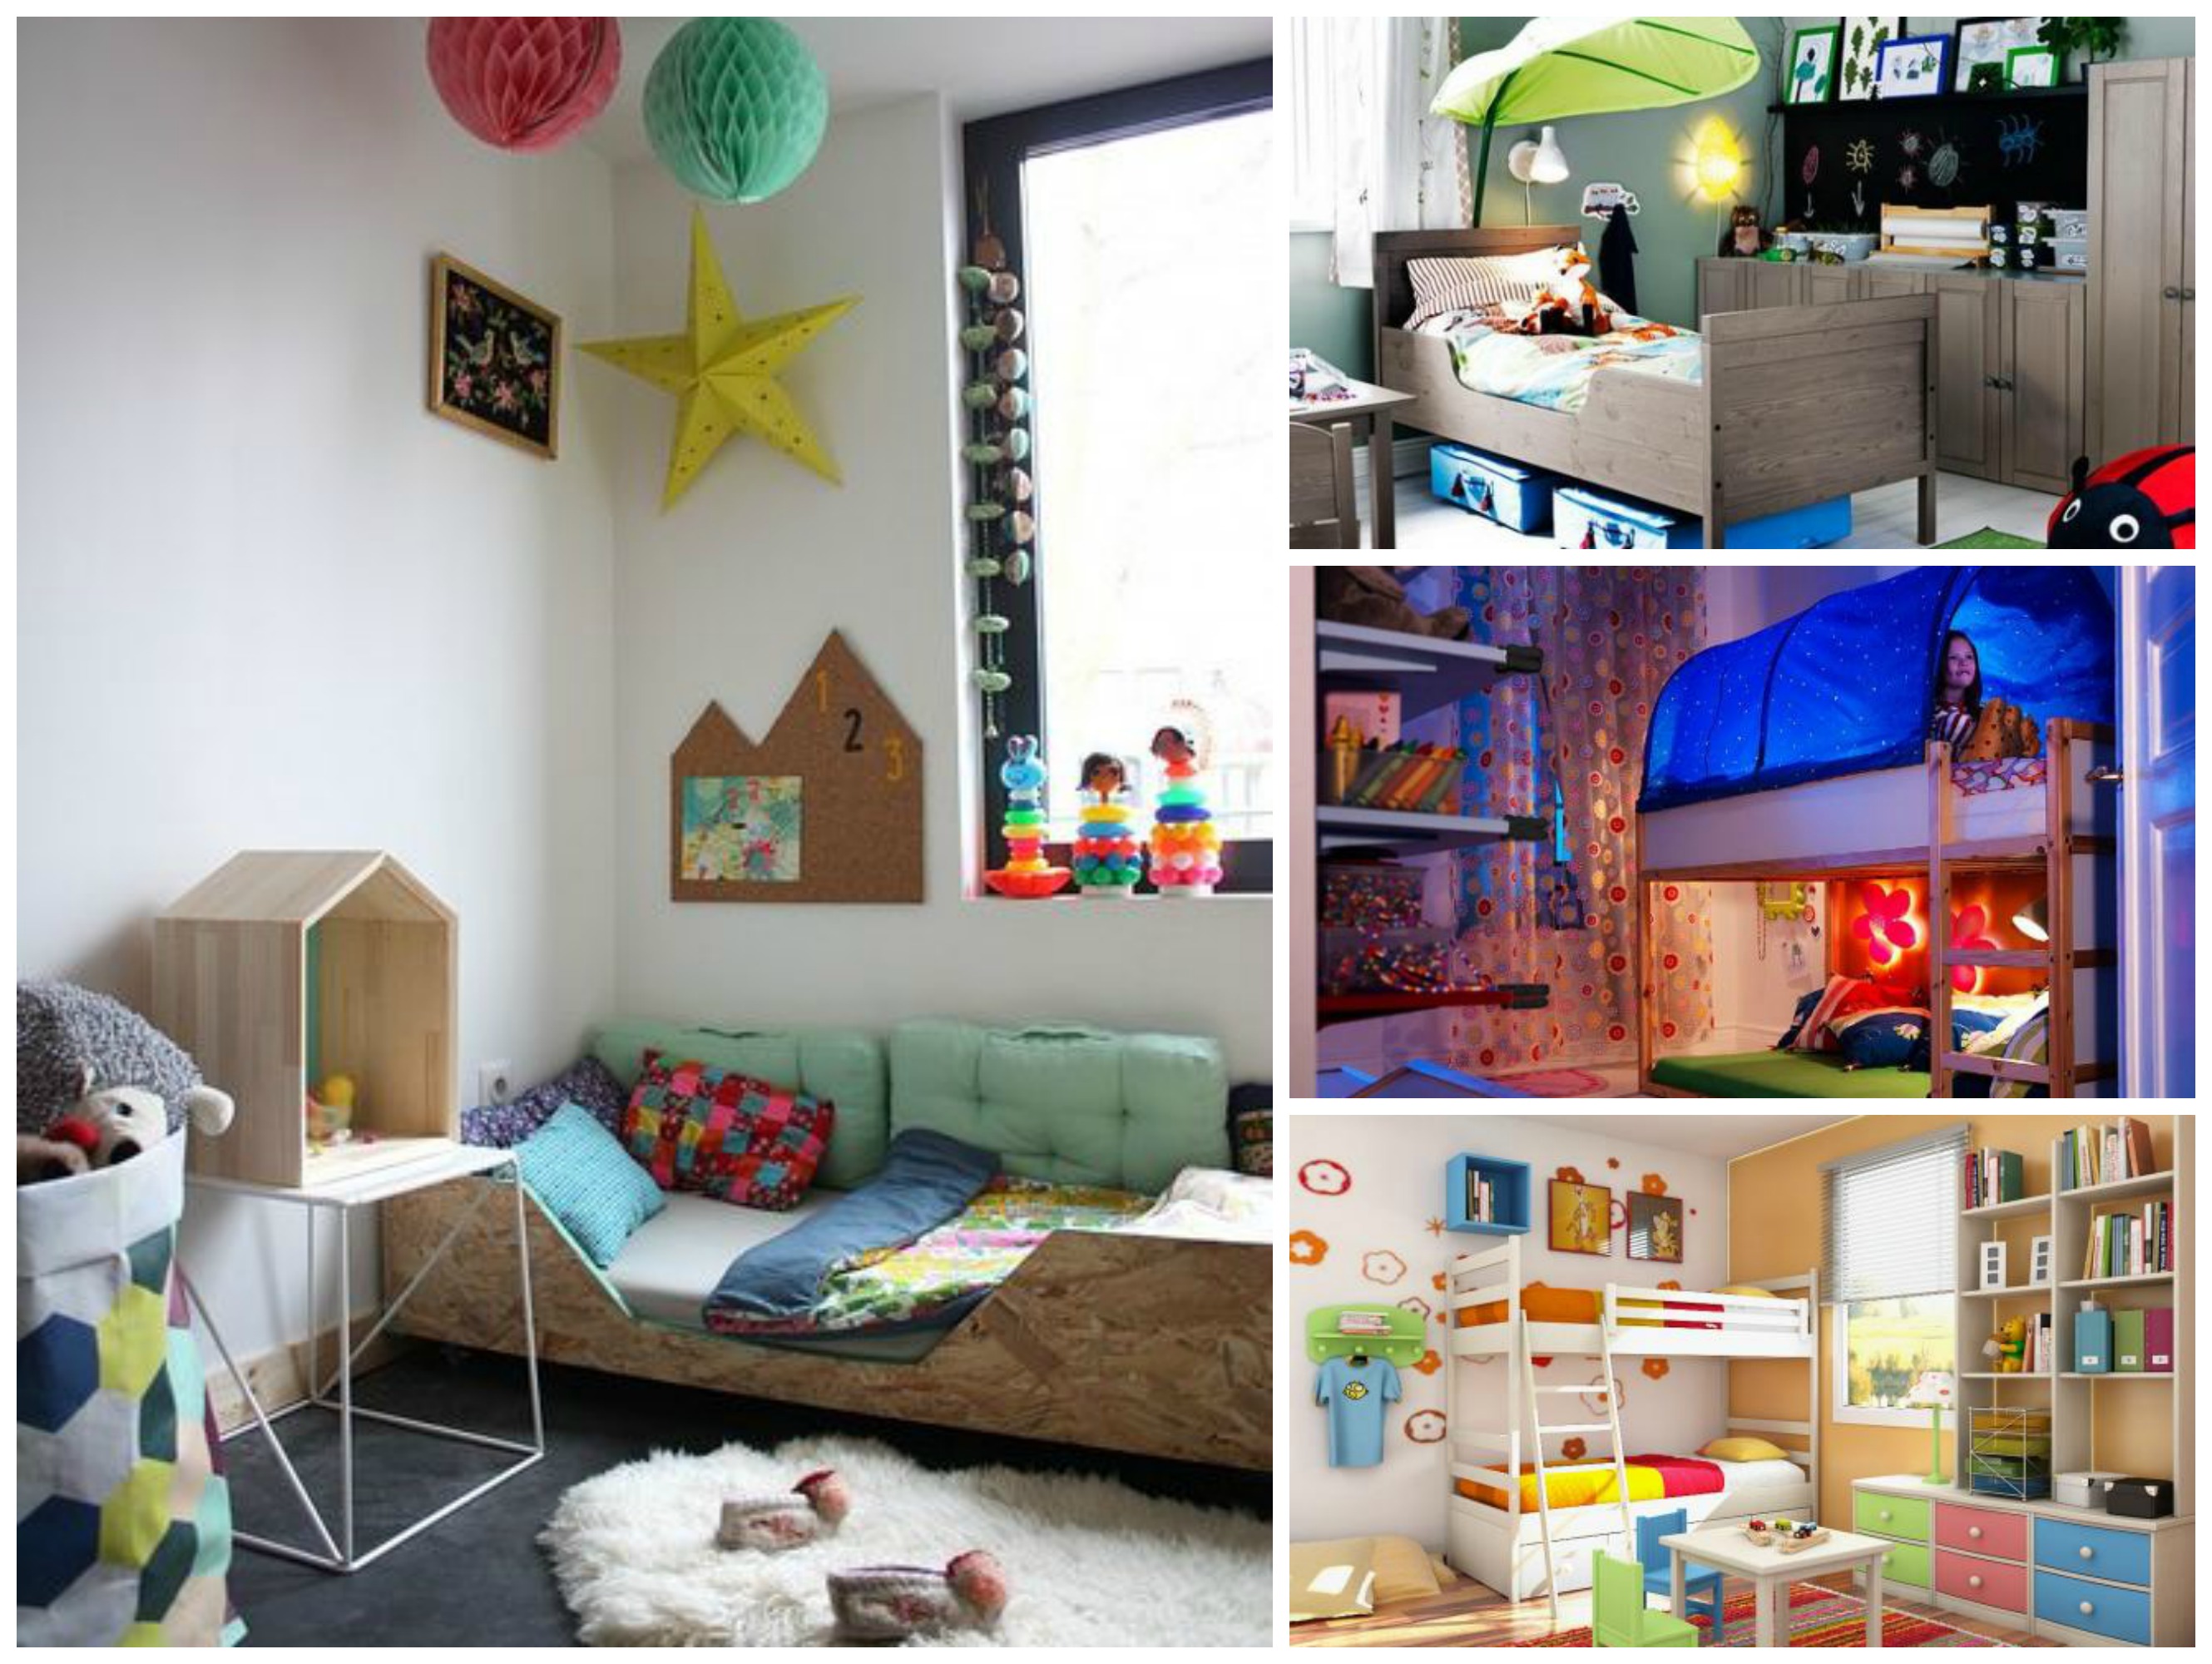 Sulikezdés - inspiráló ötletek gyermekszobákhoz